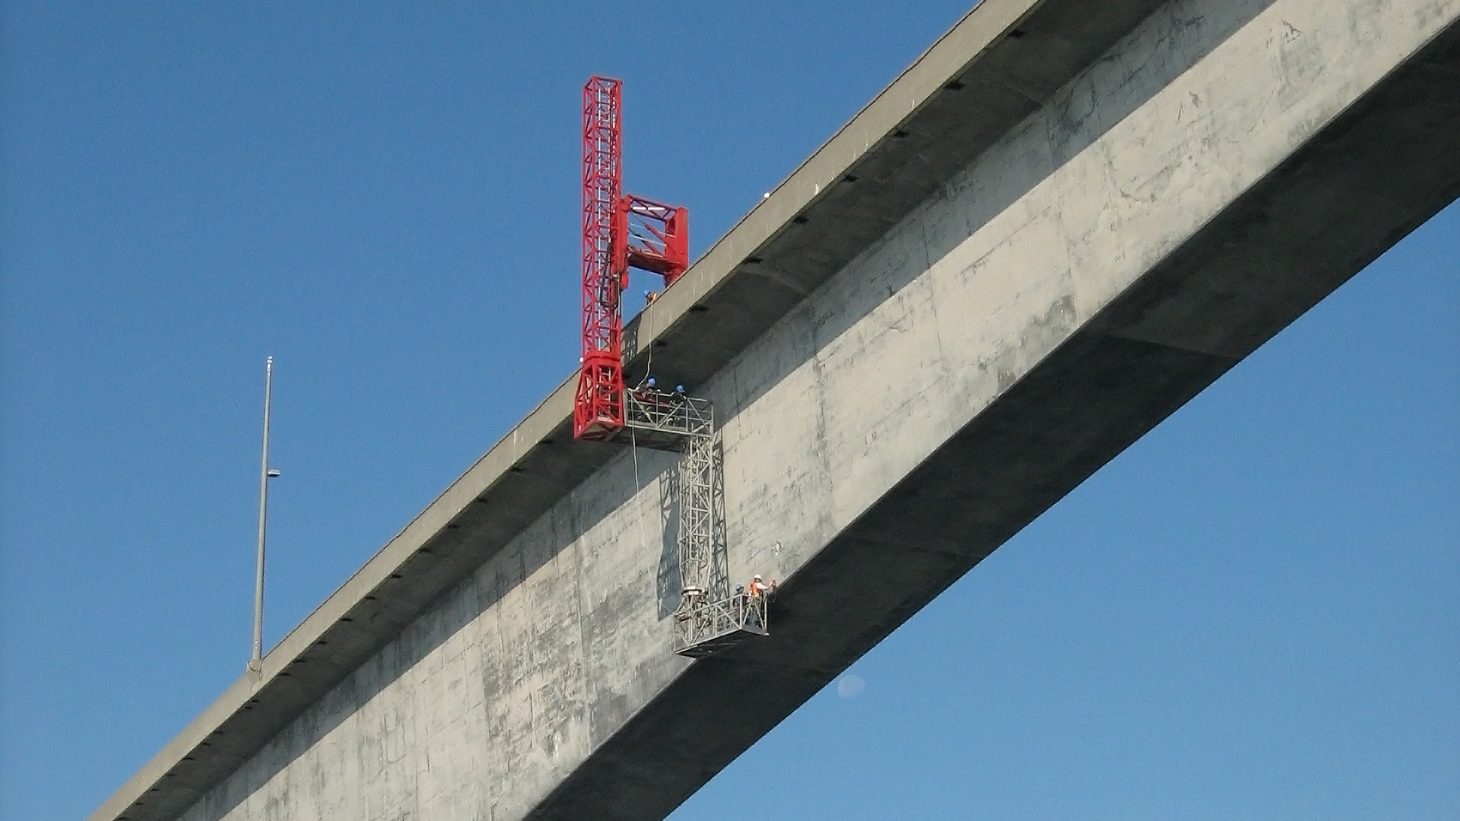 Confederation Bridge Project